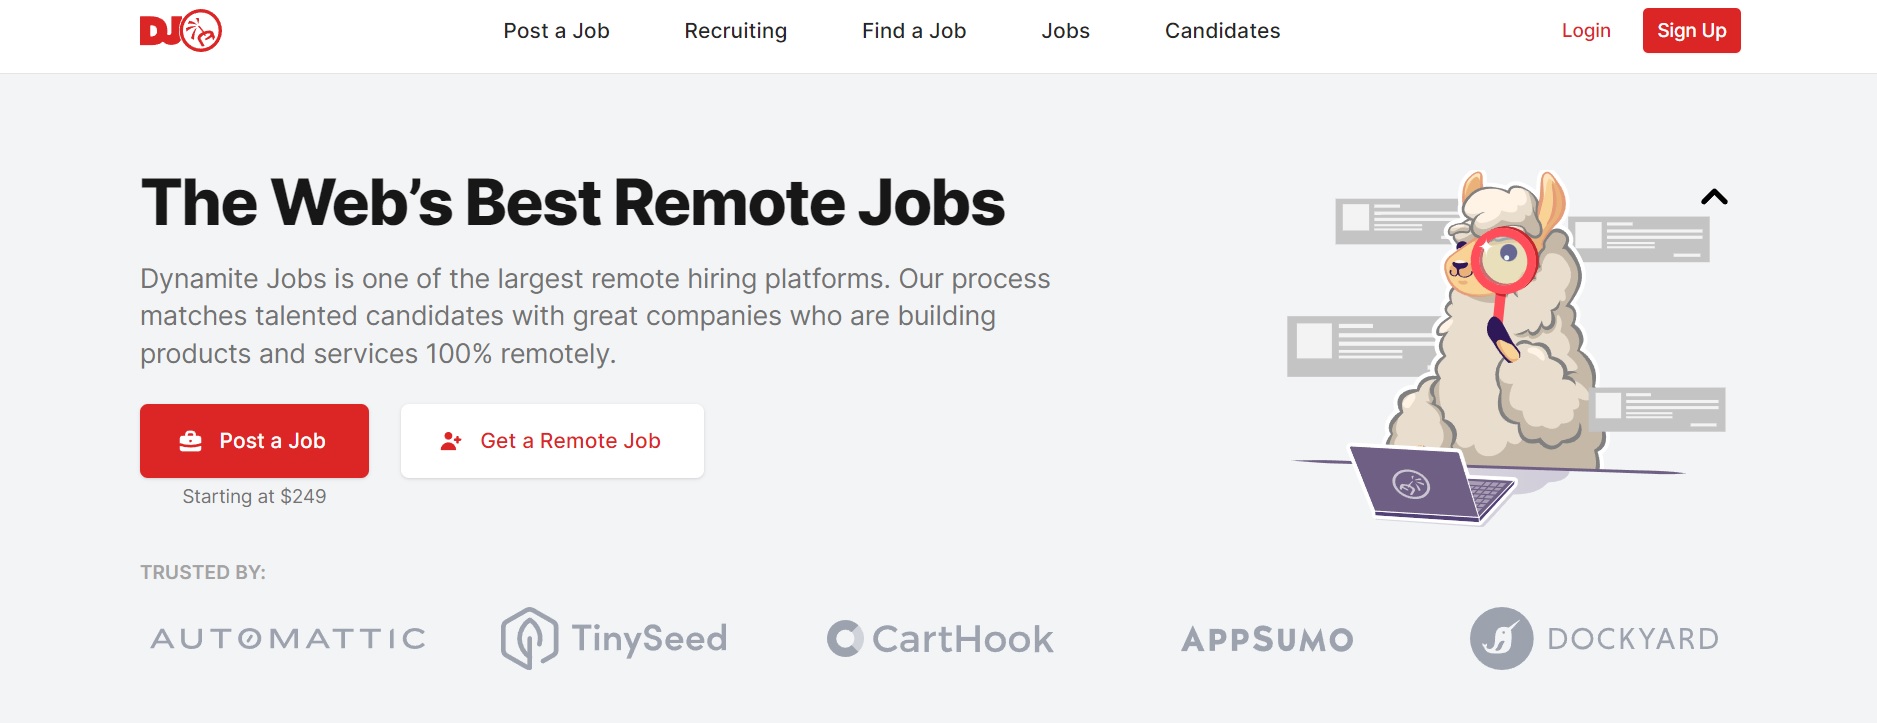 Dynamite Jobs es una plataforma muy conocida para la búsqueda de trabajo remoto